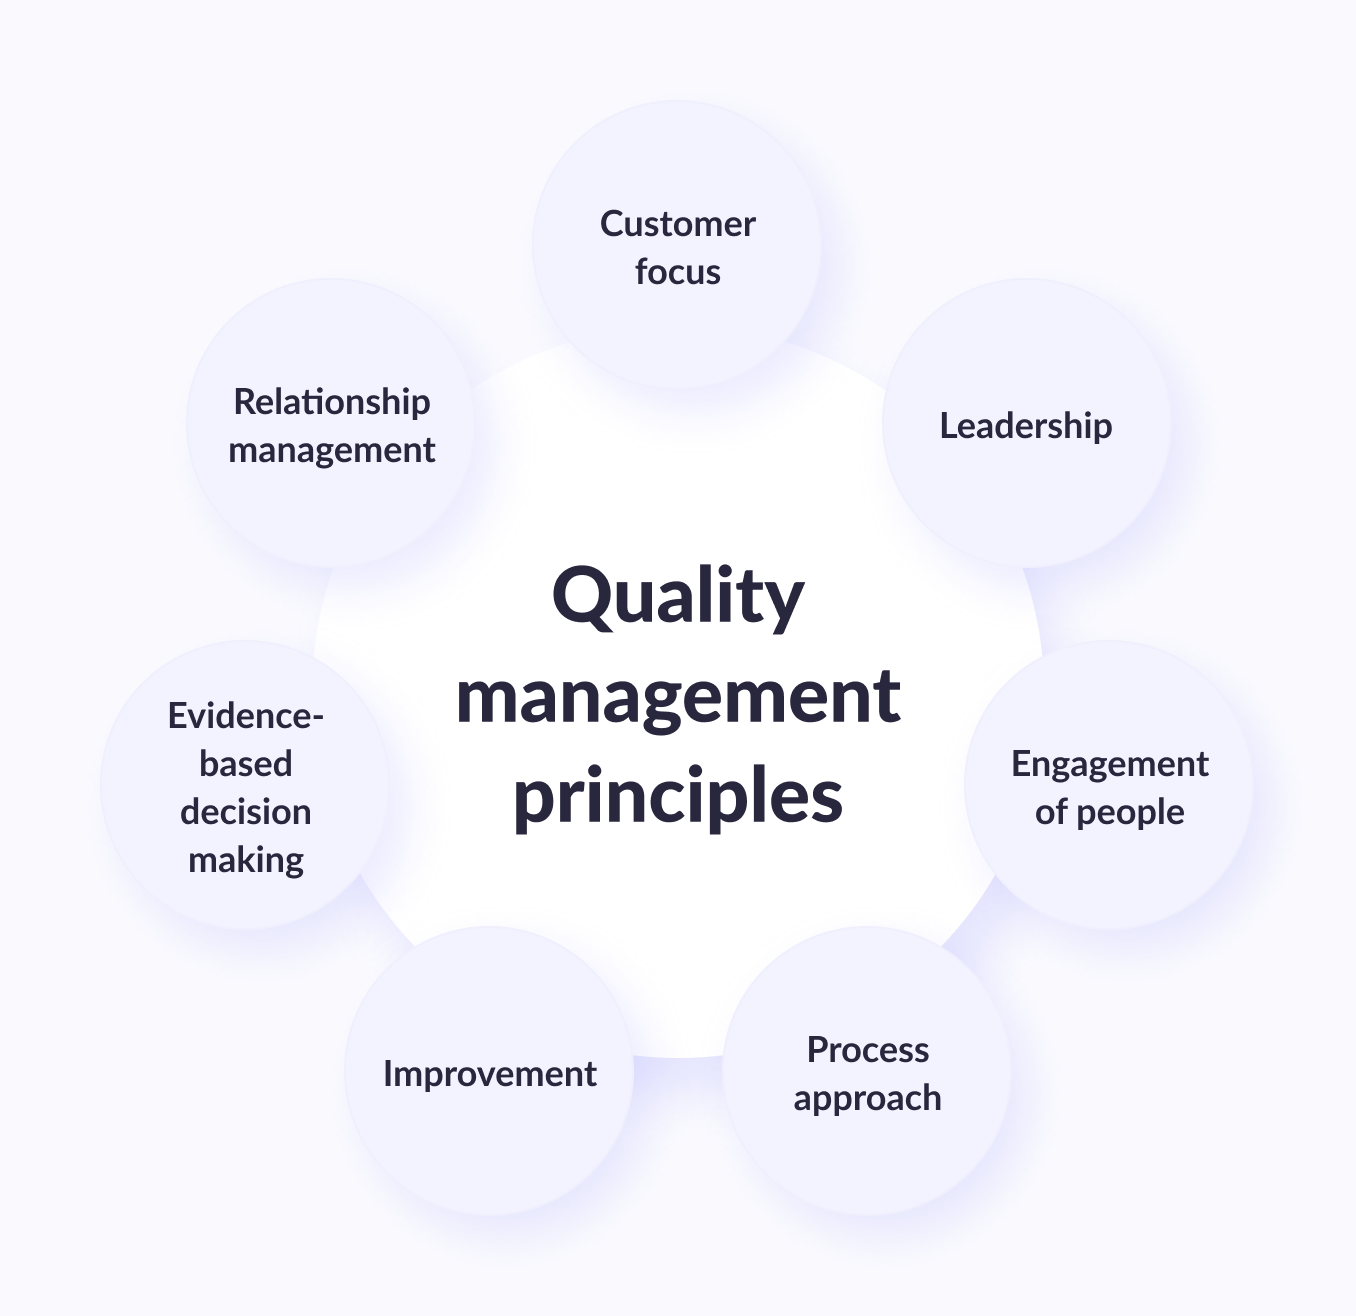 Quality management principles